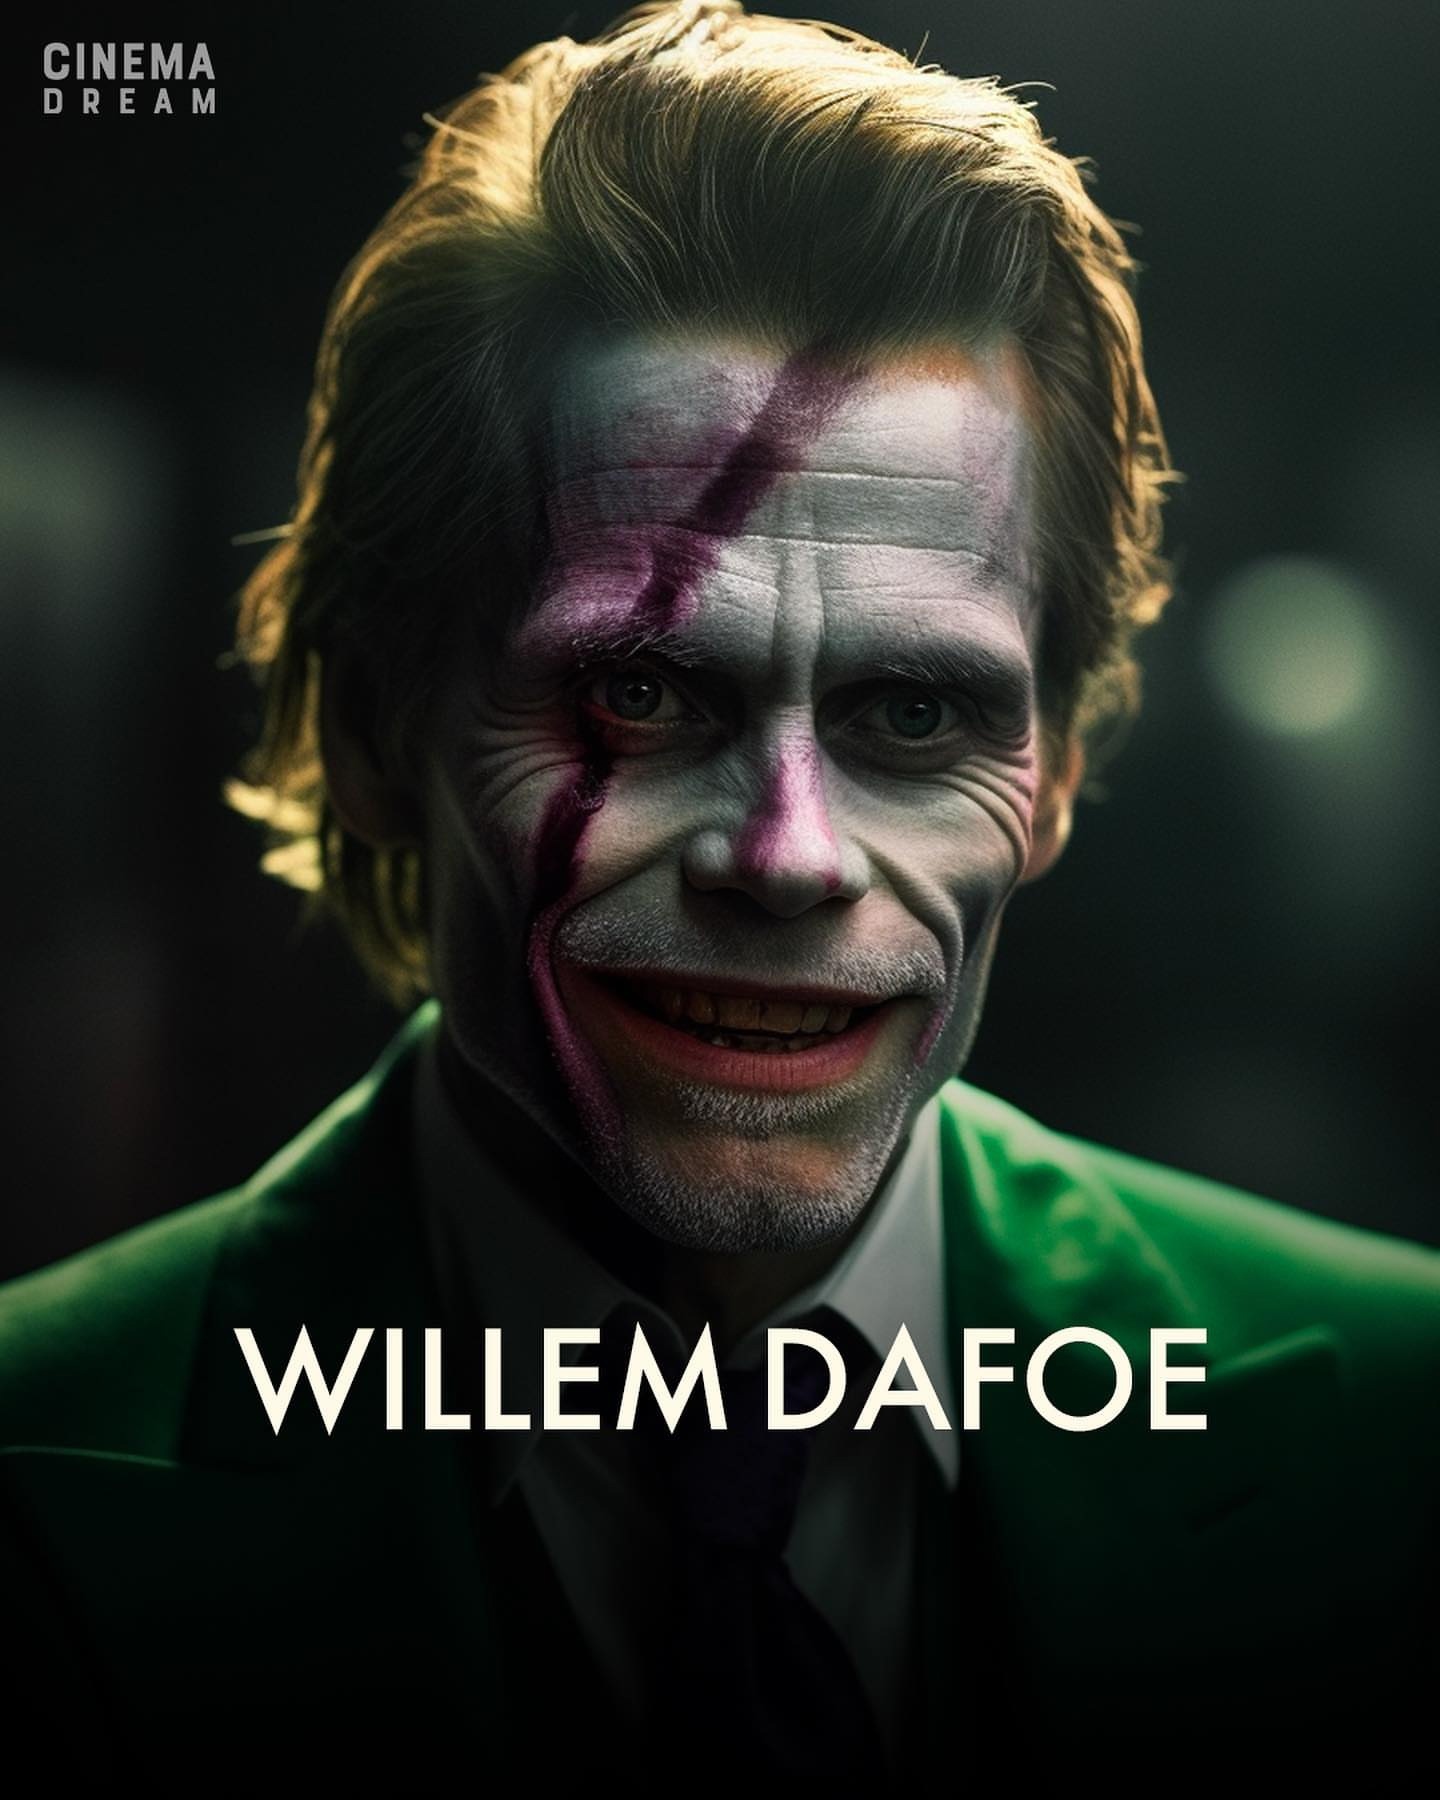 Уиллем Дефо, Тимоти Шаламе и Кристиан Бэйл показаны в роли Джокера вместо Хоакина Феникса